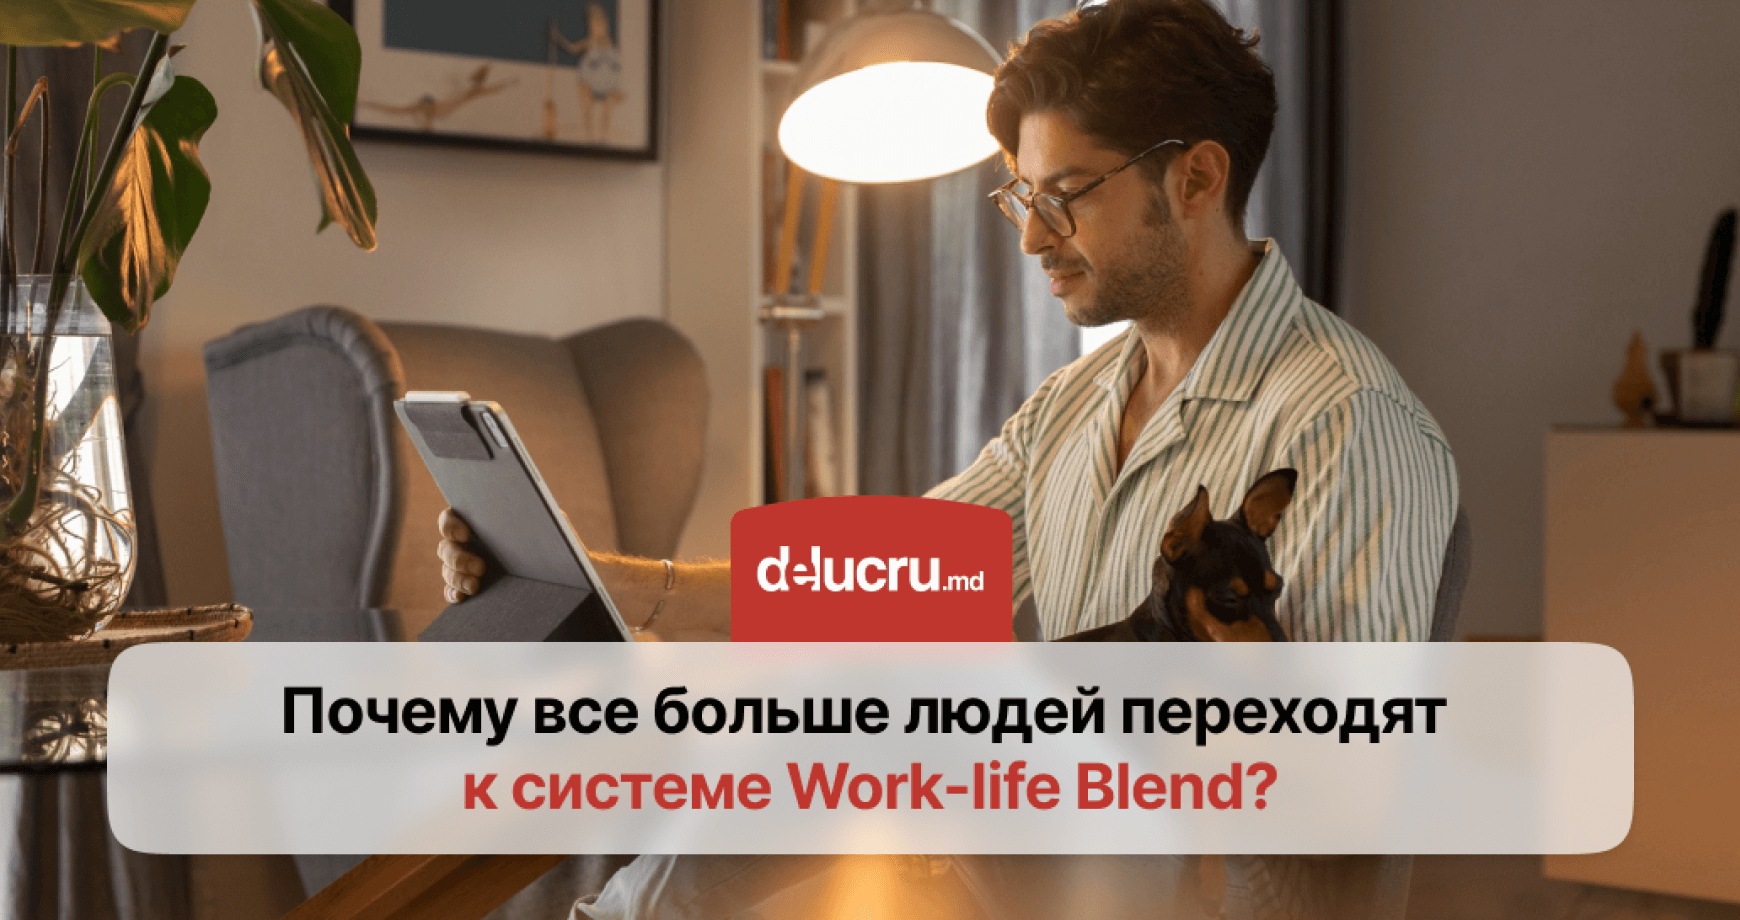 Как концепция Work-life Blend формирует новый взгляд на работу и жизнь и в чем ее отличие от Work-life Balance?